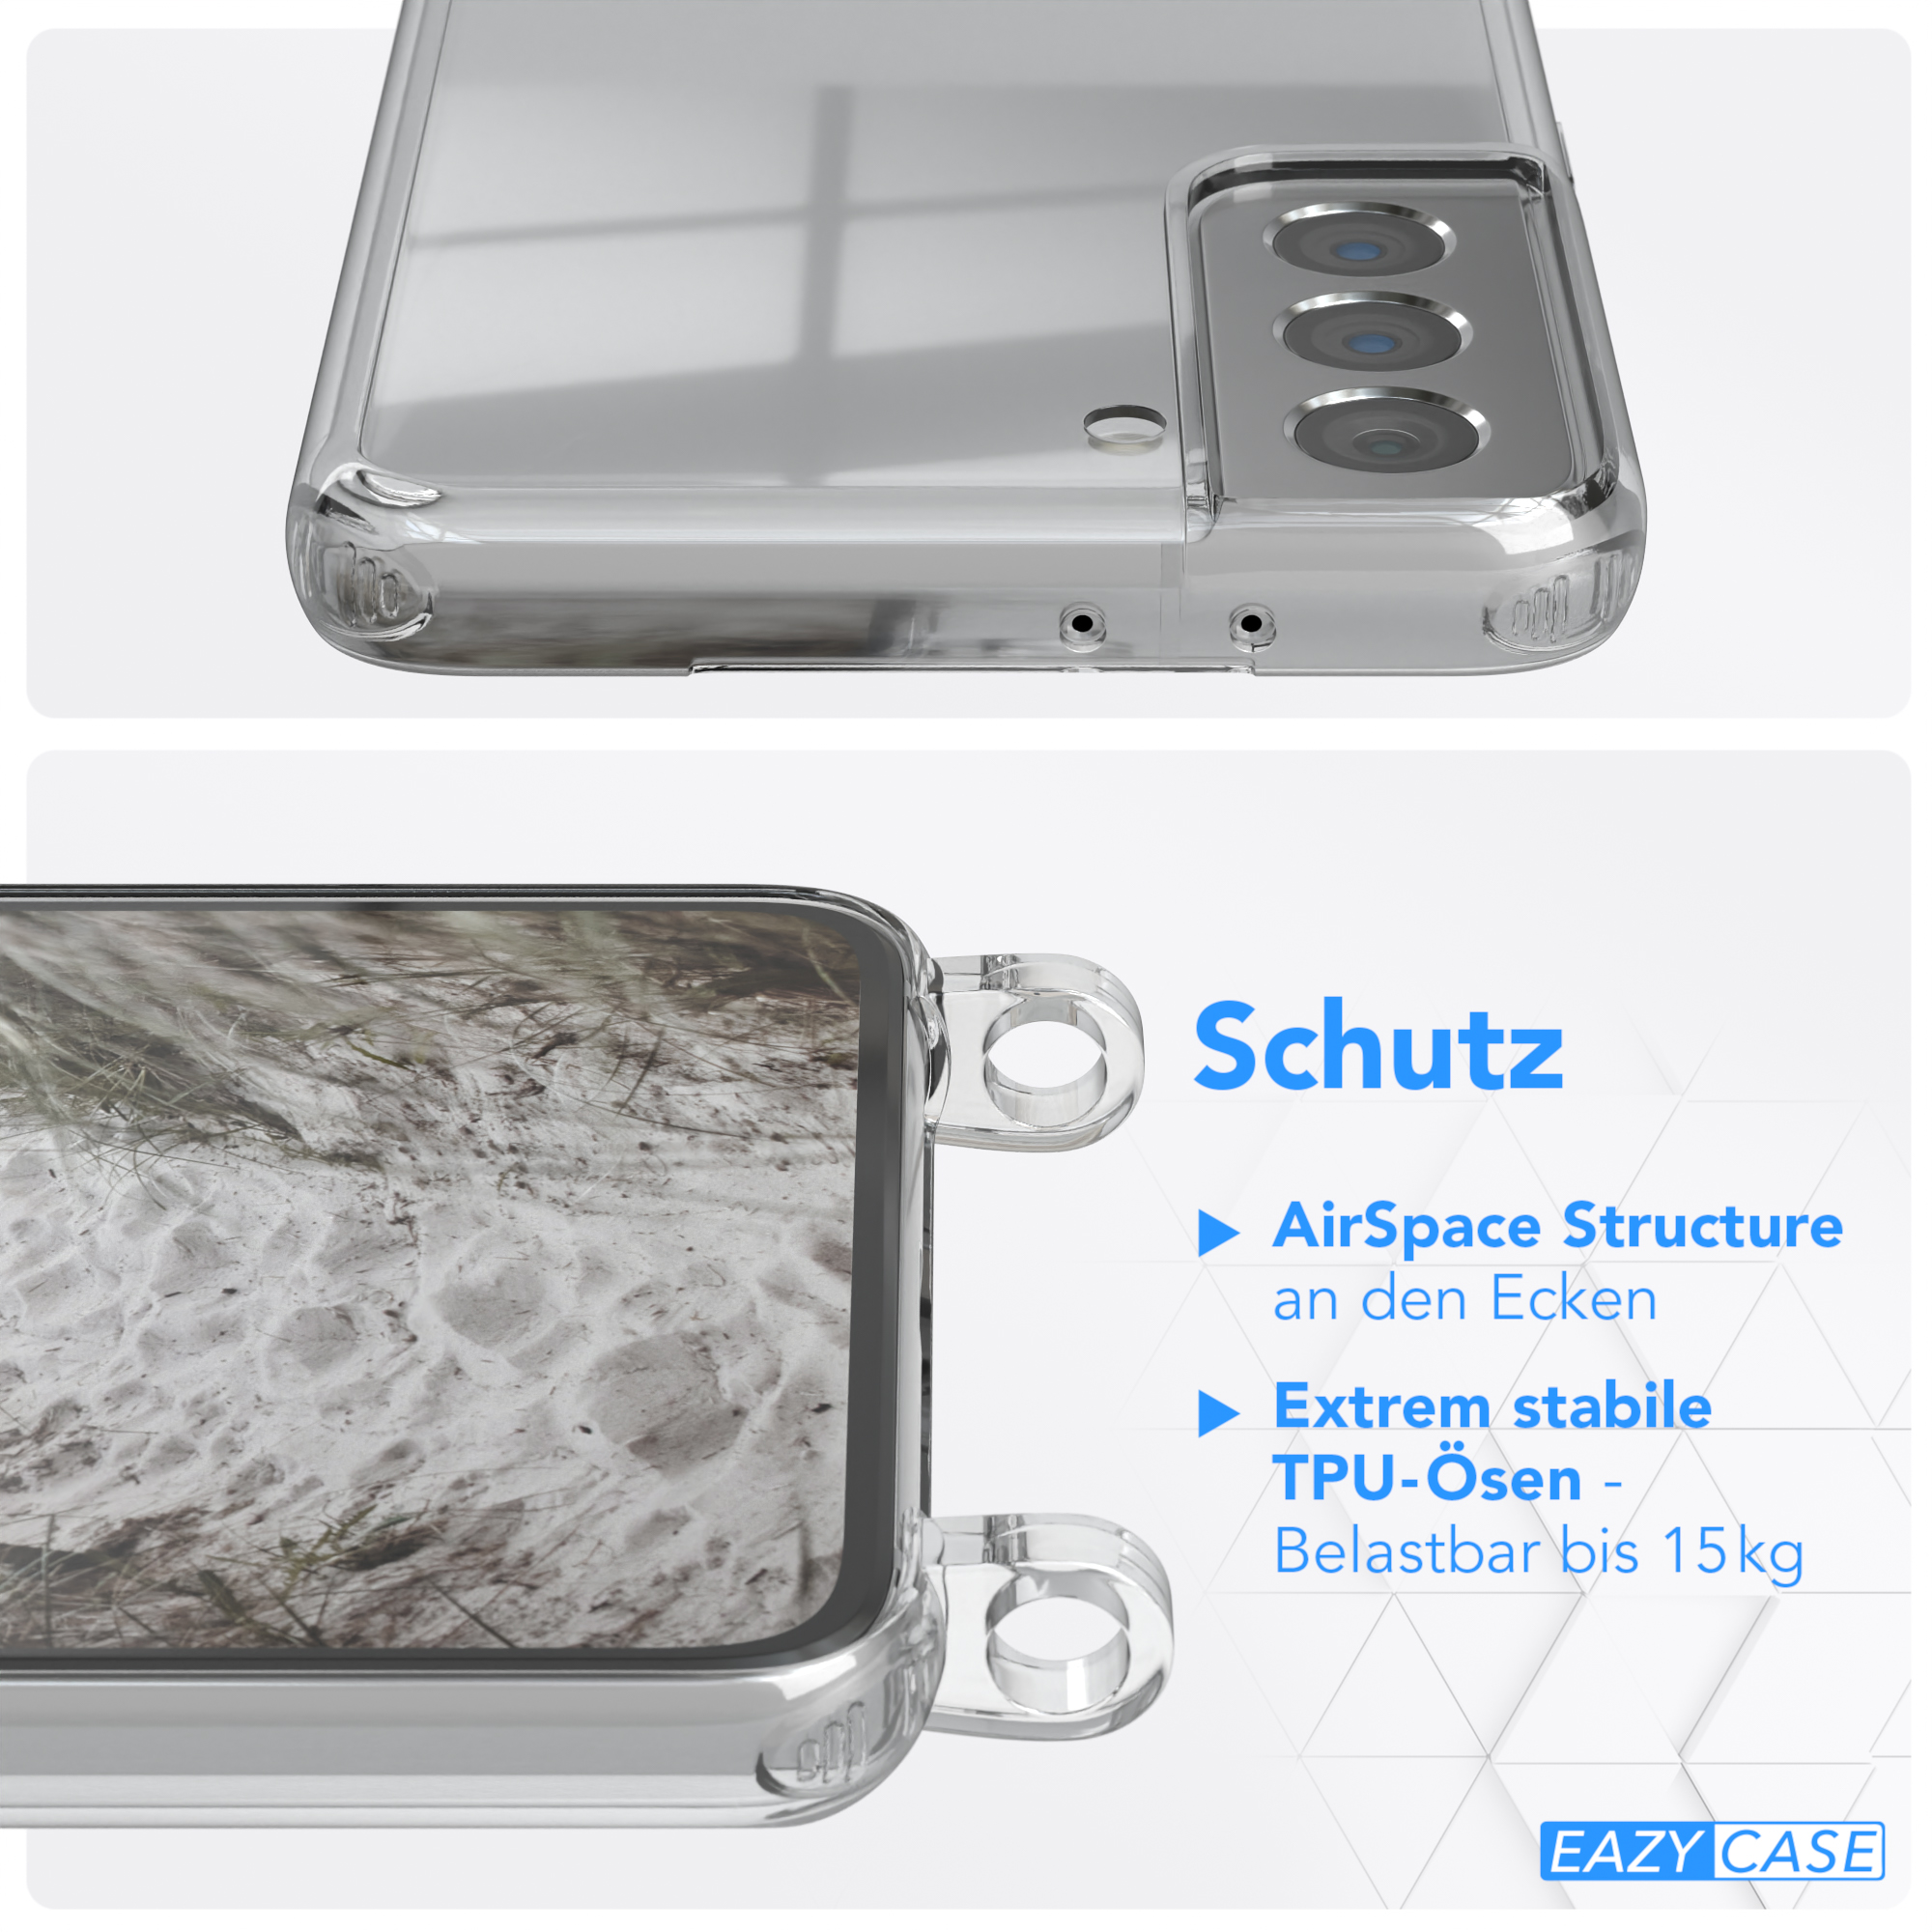 EAZY S21 Transparente Beige Umhängetasche, CASE / Taupe Galaxy 5G, Samsung, mit + Karabiner, Handyhülle breiter Kordel Grau